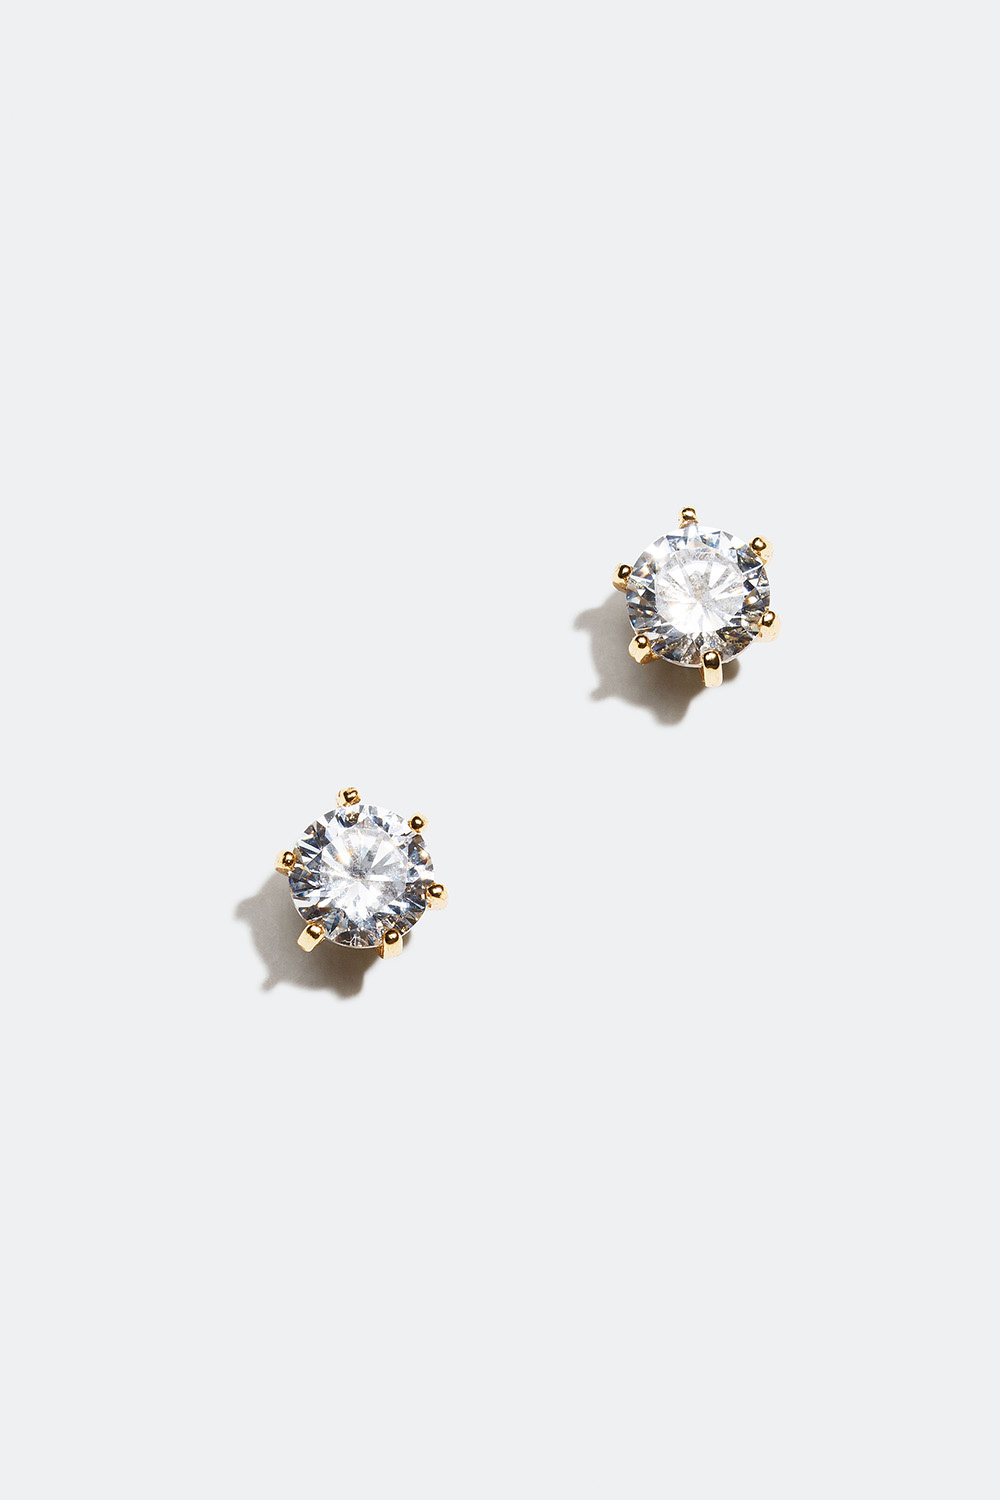 Pienet nappikorvakorut, joissa Cubic Zirconia -kivi ja 18 karaatin kultaus, 0,5 cm